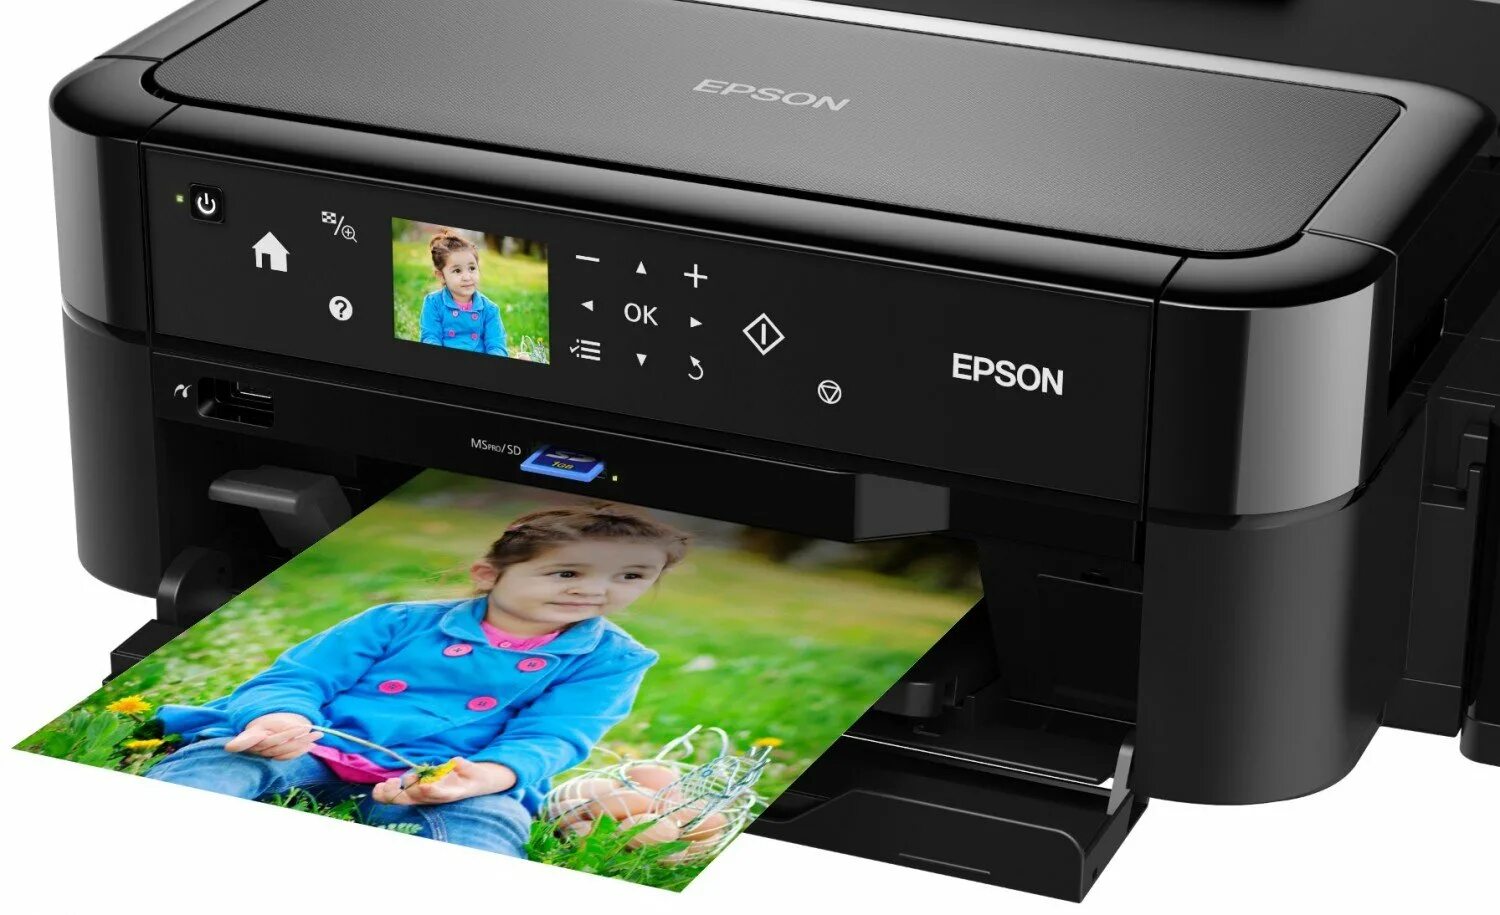 Принтер струйный Epson l810. Принтеры Эпсон 810. Epson 810 принтер цветной. Epson принтер Epson l810.